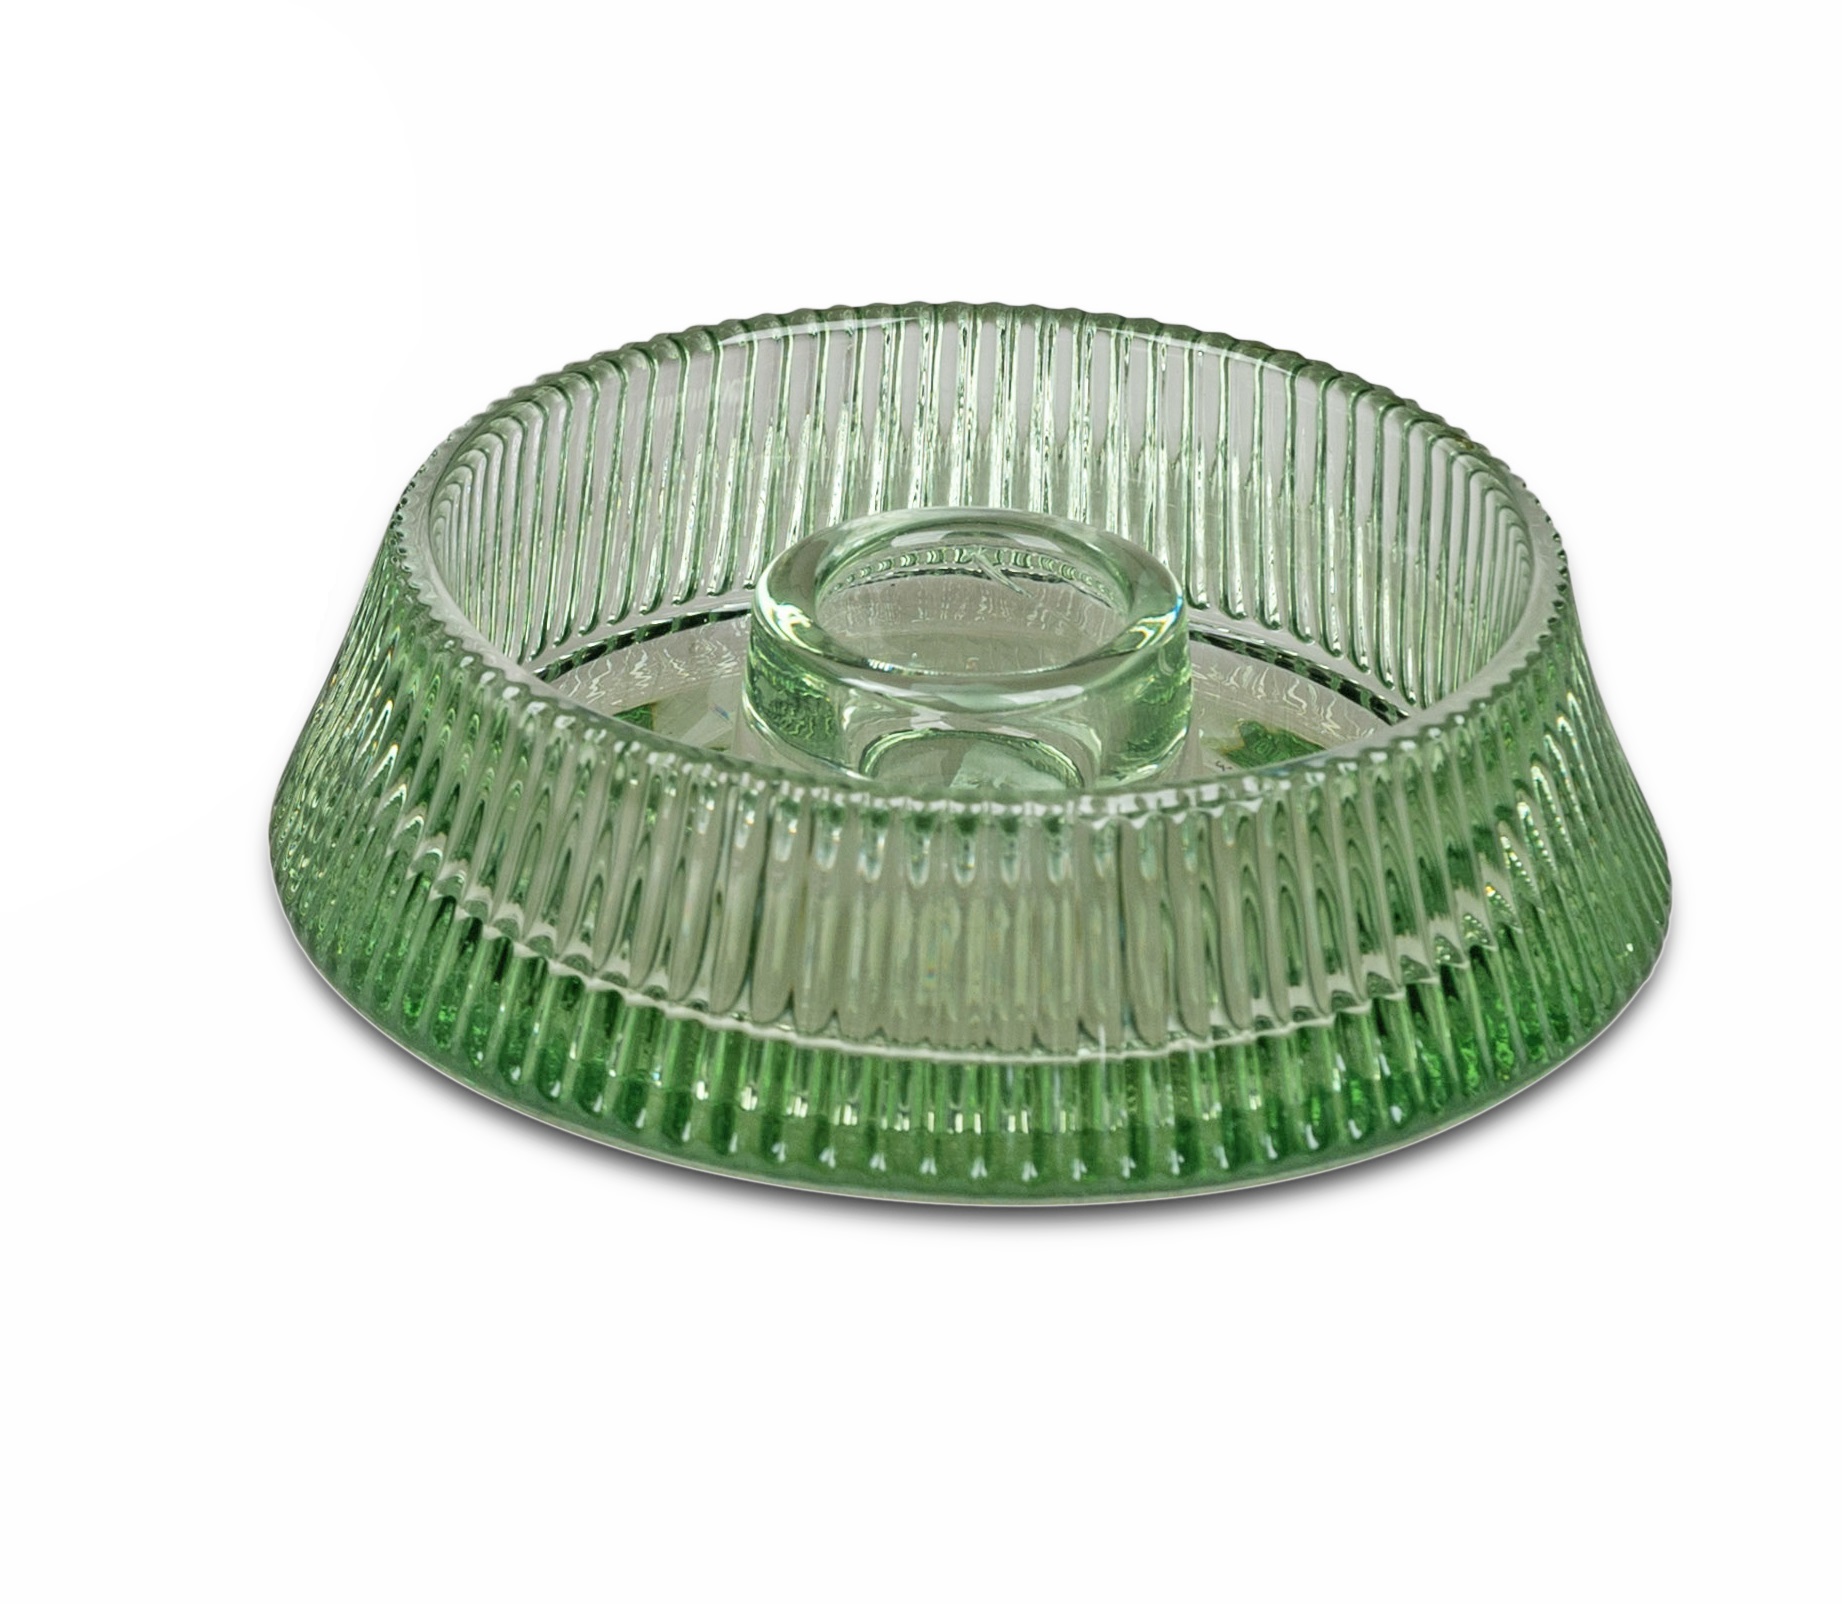 Leuchter Ø 11cm flach grün für Stabkerzen Kerzenleuchter Teelichthalter aus Glas formano F24